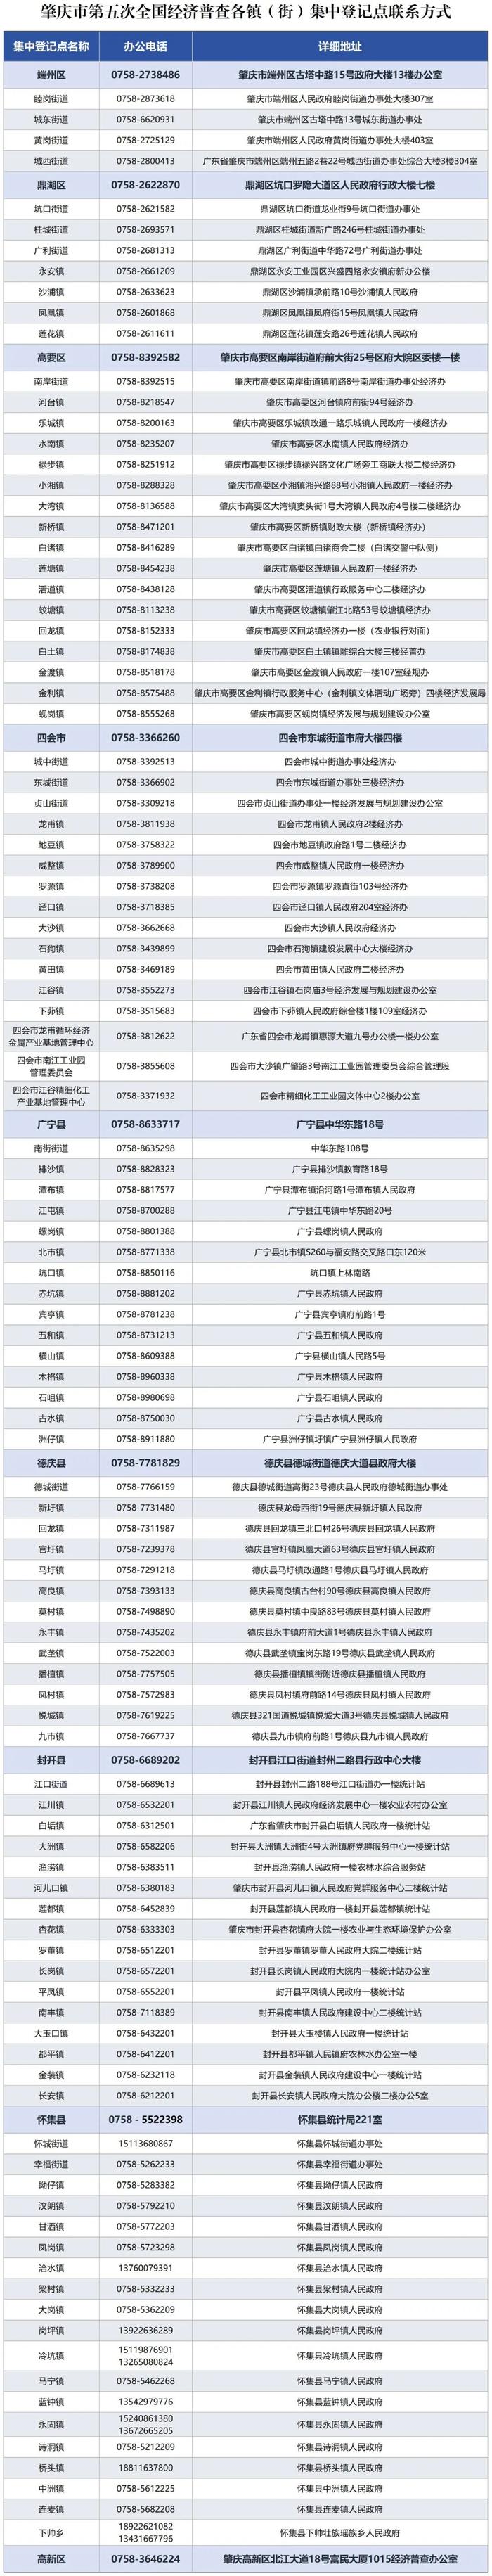 肇庆市第五次全国经济普查领导小组办公室关于开展第五次全国经济普查集中清查登记的通告